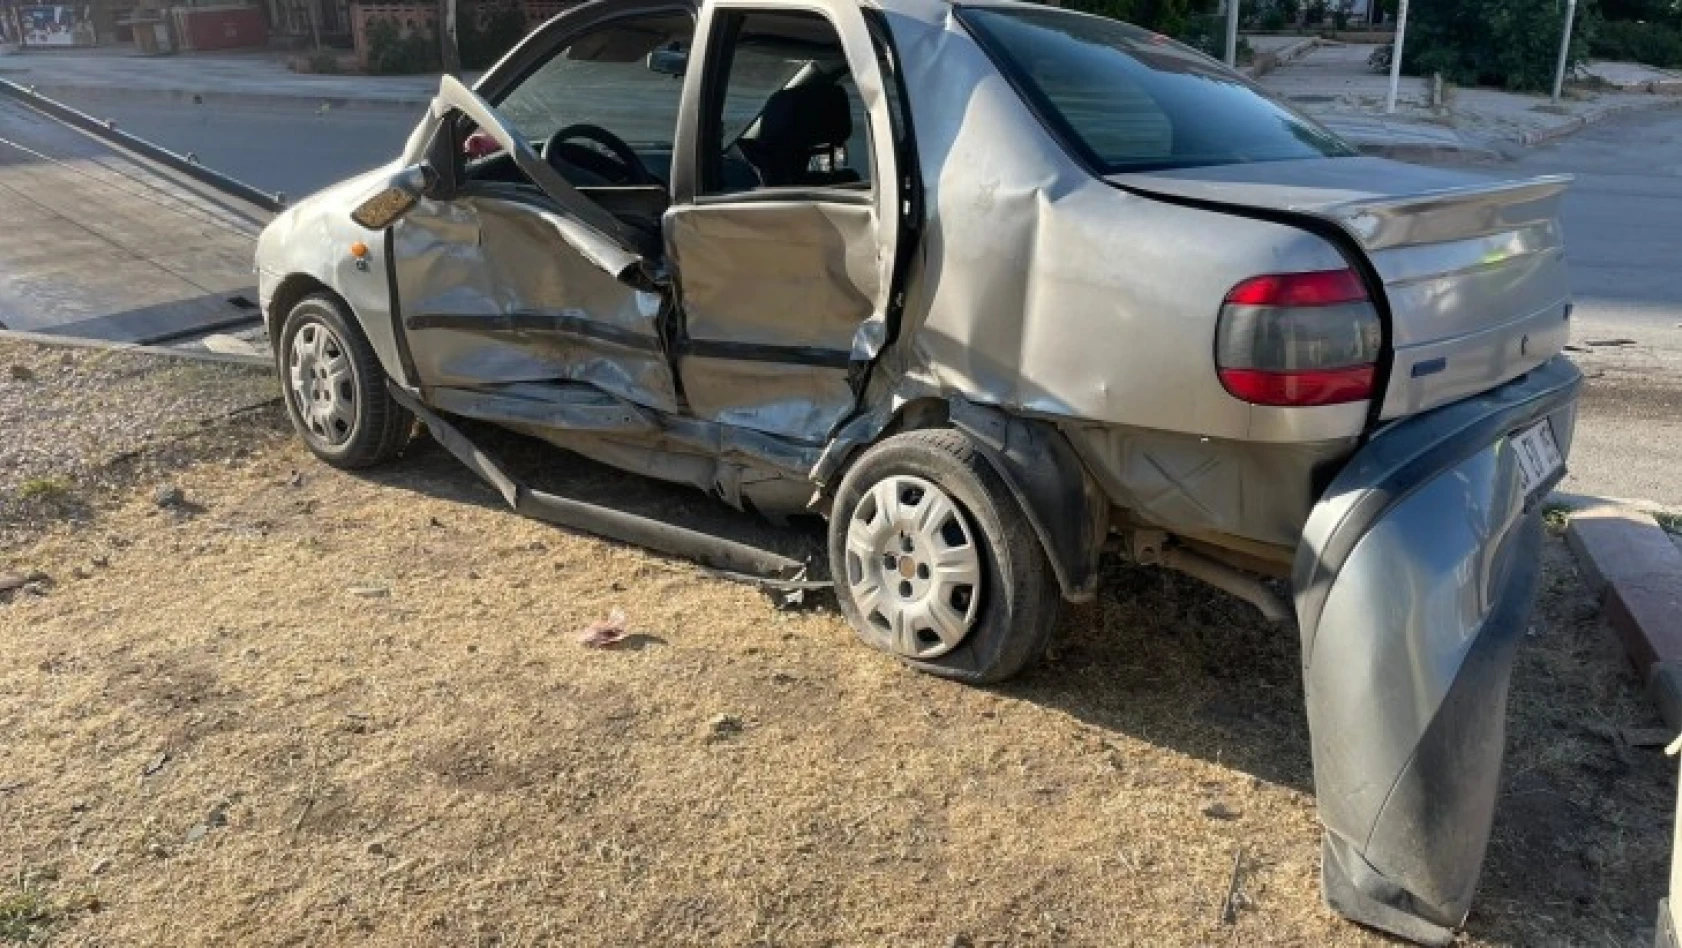 Elazığ'da otomobil ile hafif ticari araç çarpıştı: 3 yaralı